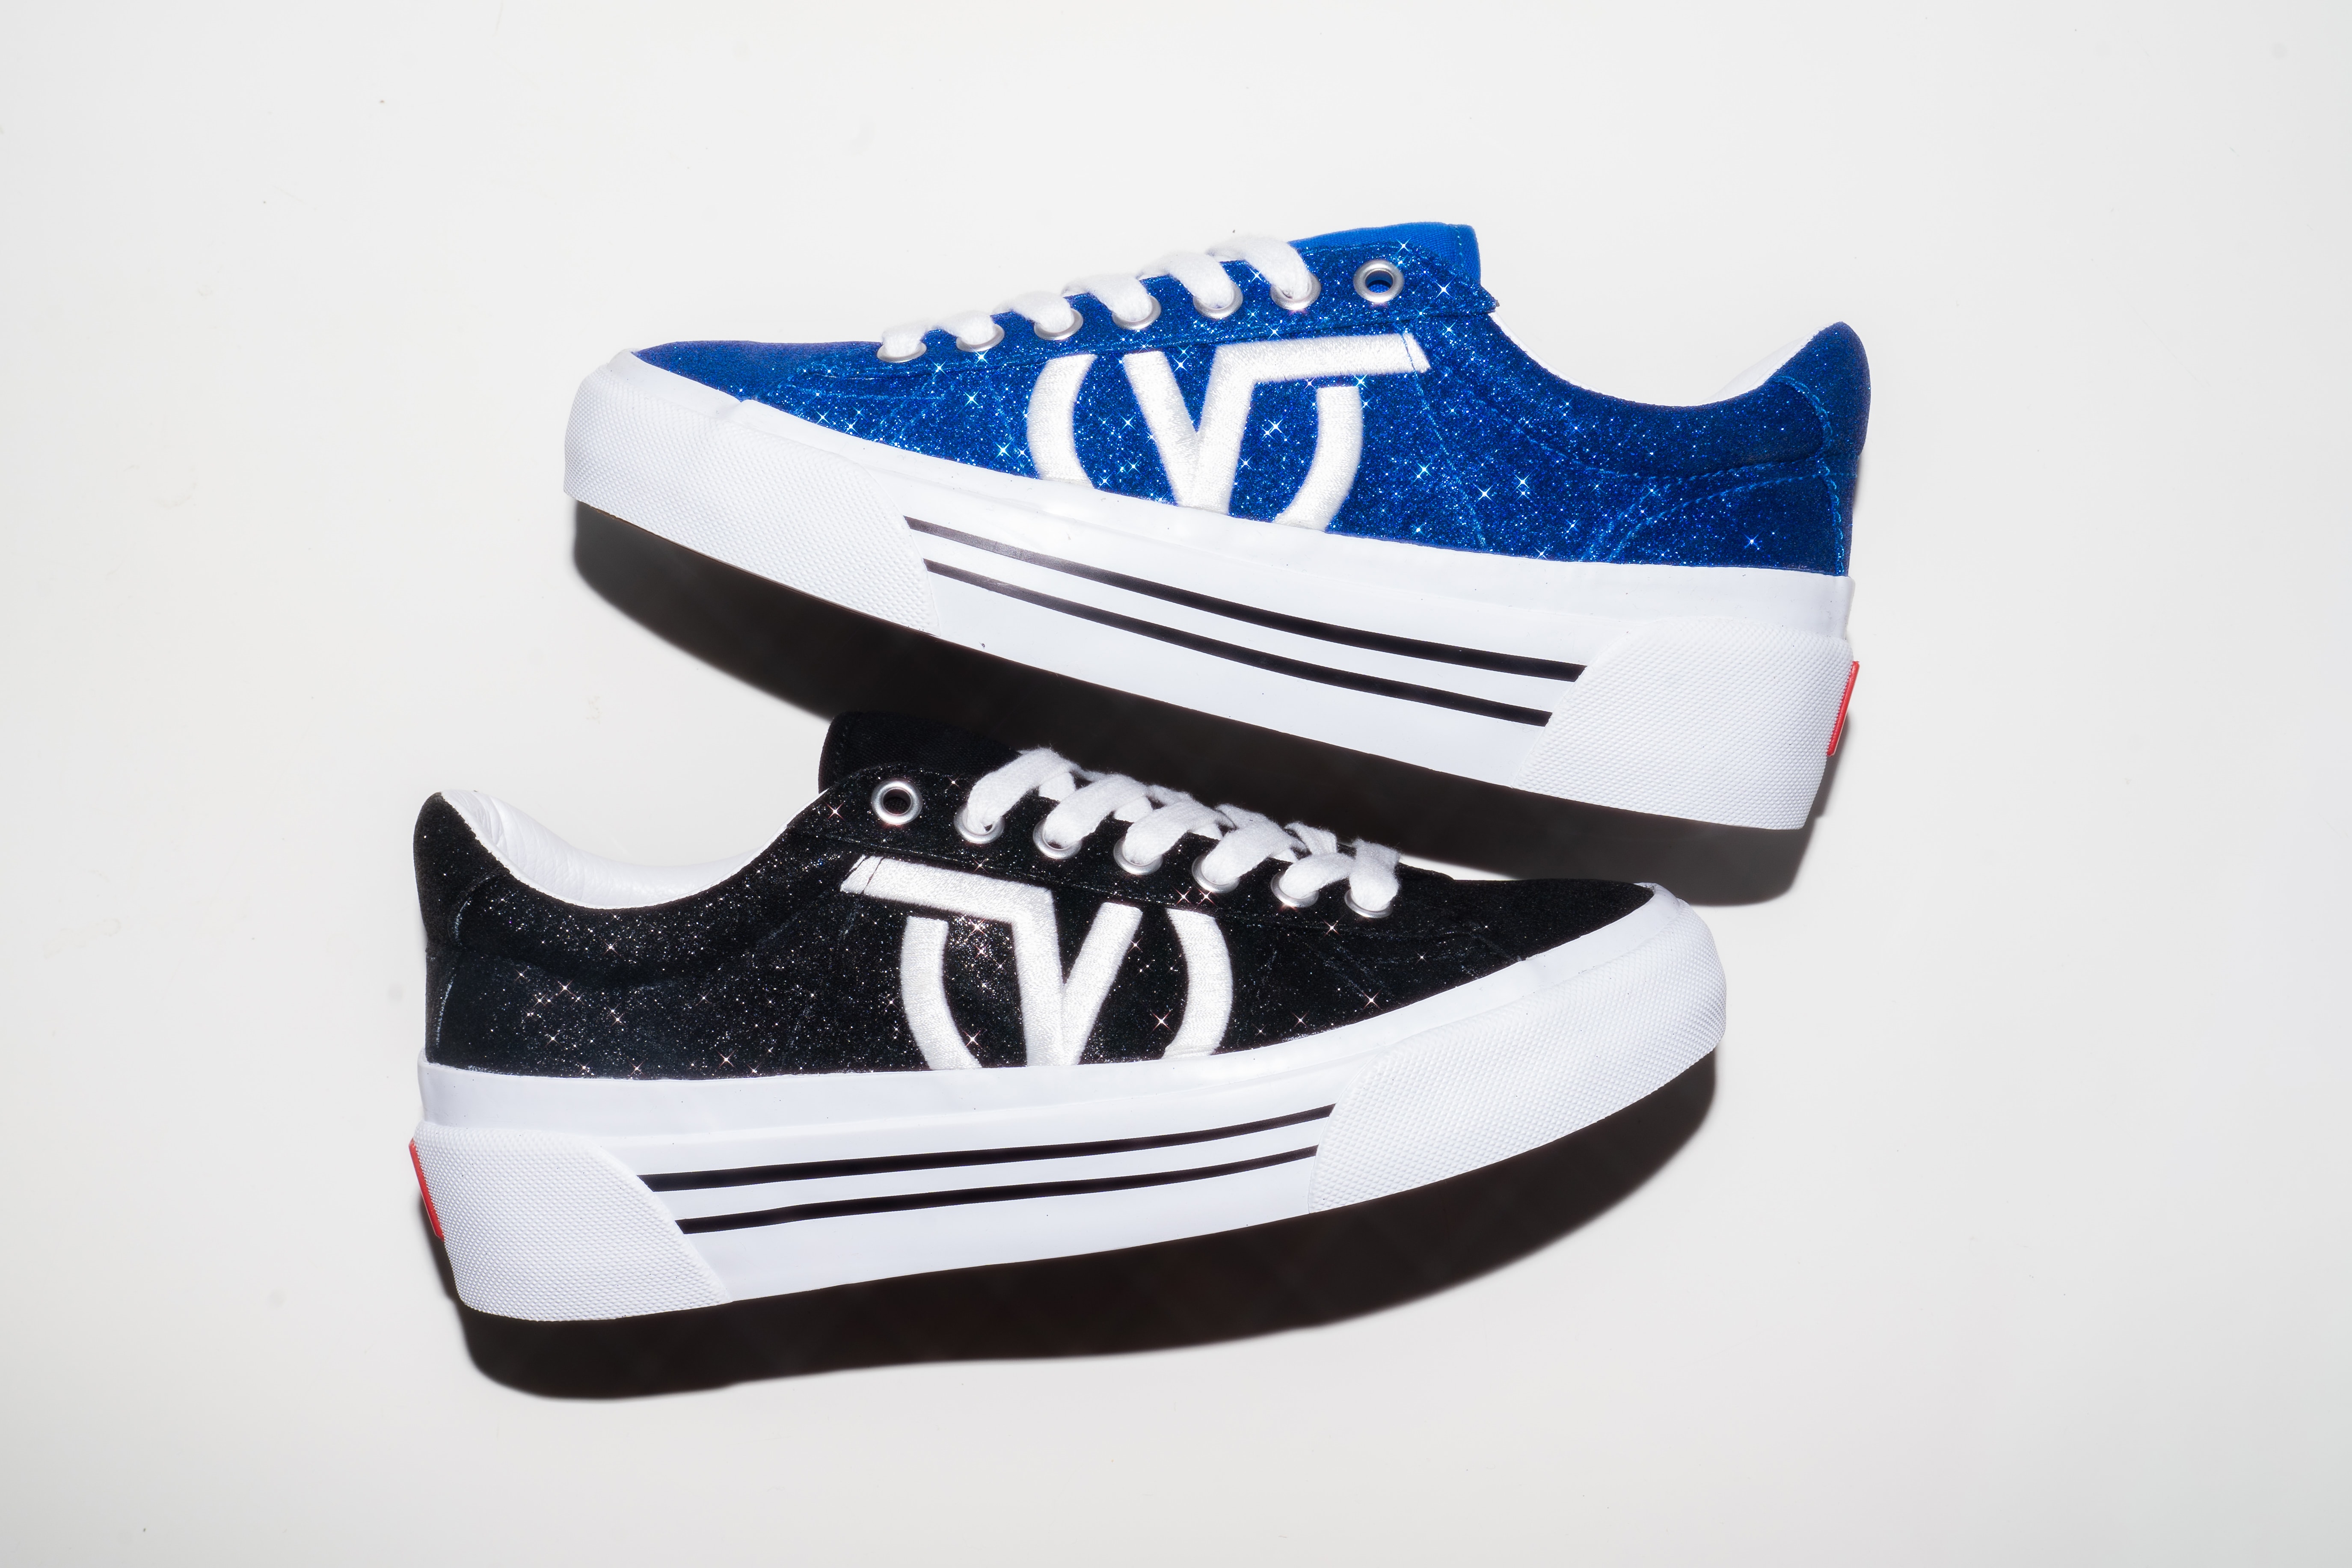 Vans Sid NI Retro Sneaker Release Glitter Design 90s Shoe Streetwear Black Blue Sparkle V Logo Vintage Platform 